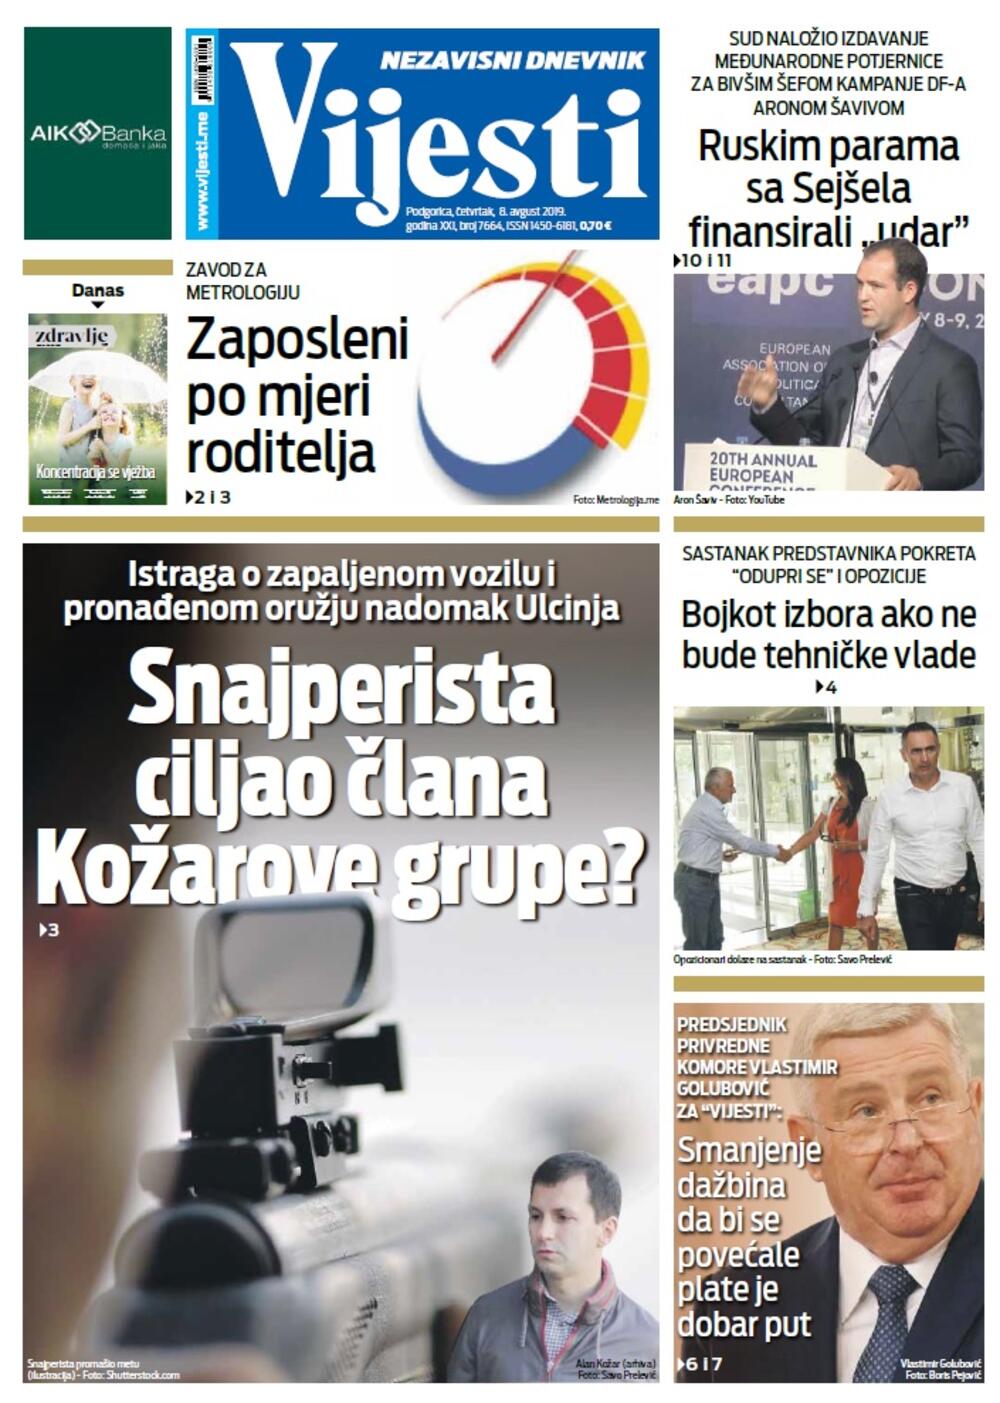 Naslovna strana "Vijesti" za 8. avgust, Foto: Vijesti